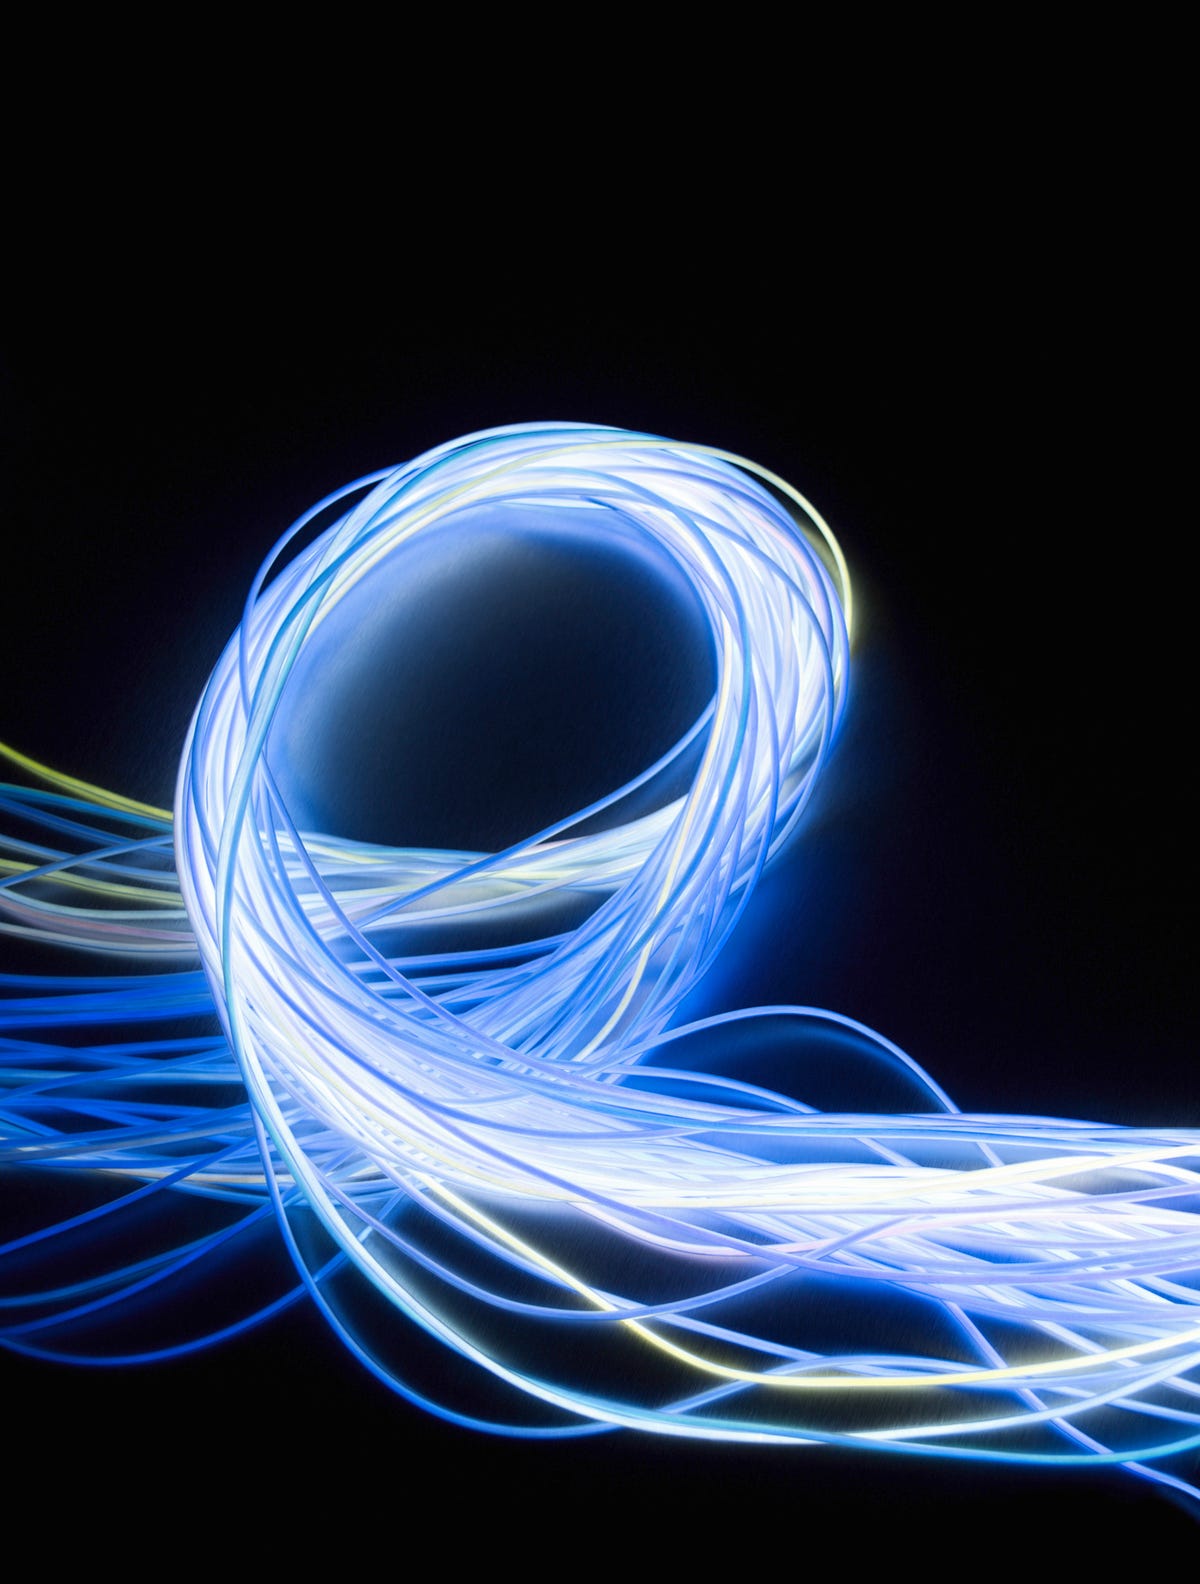 Ring bundle of fiber optic strands on a black background